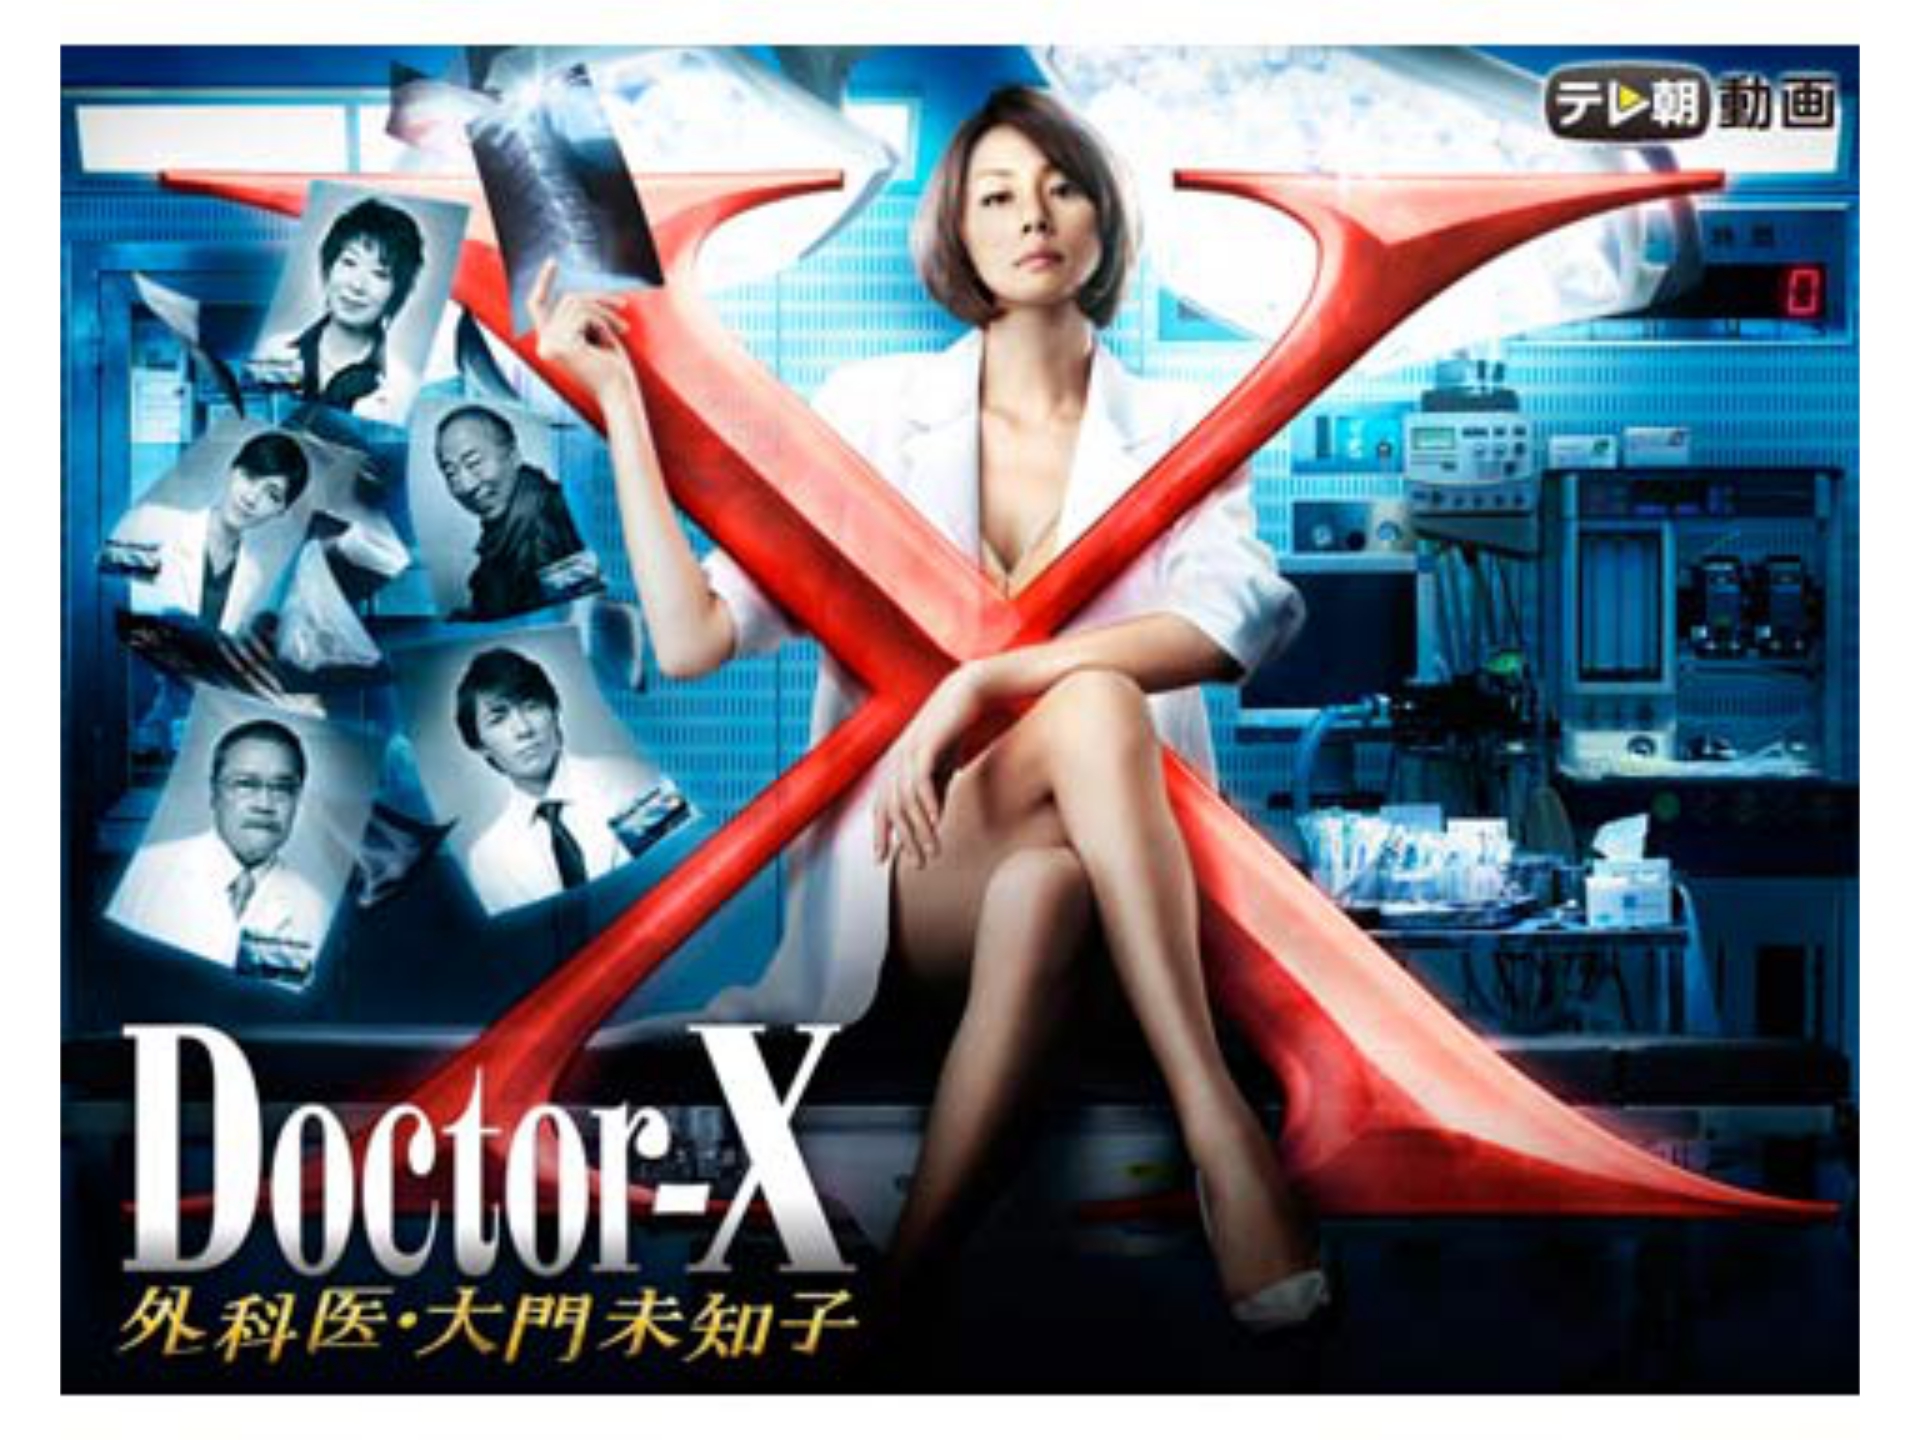 ドラマ ドクターx 外科医 大門未知子 13 の動画 初月無料 動画配信サービスのビデオマーケット